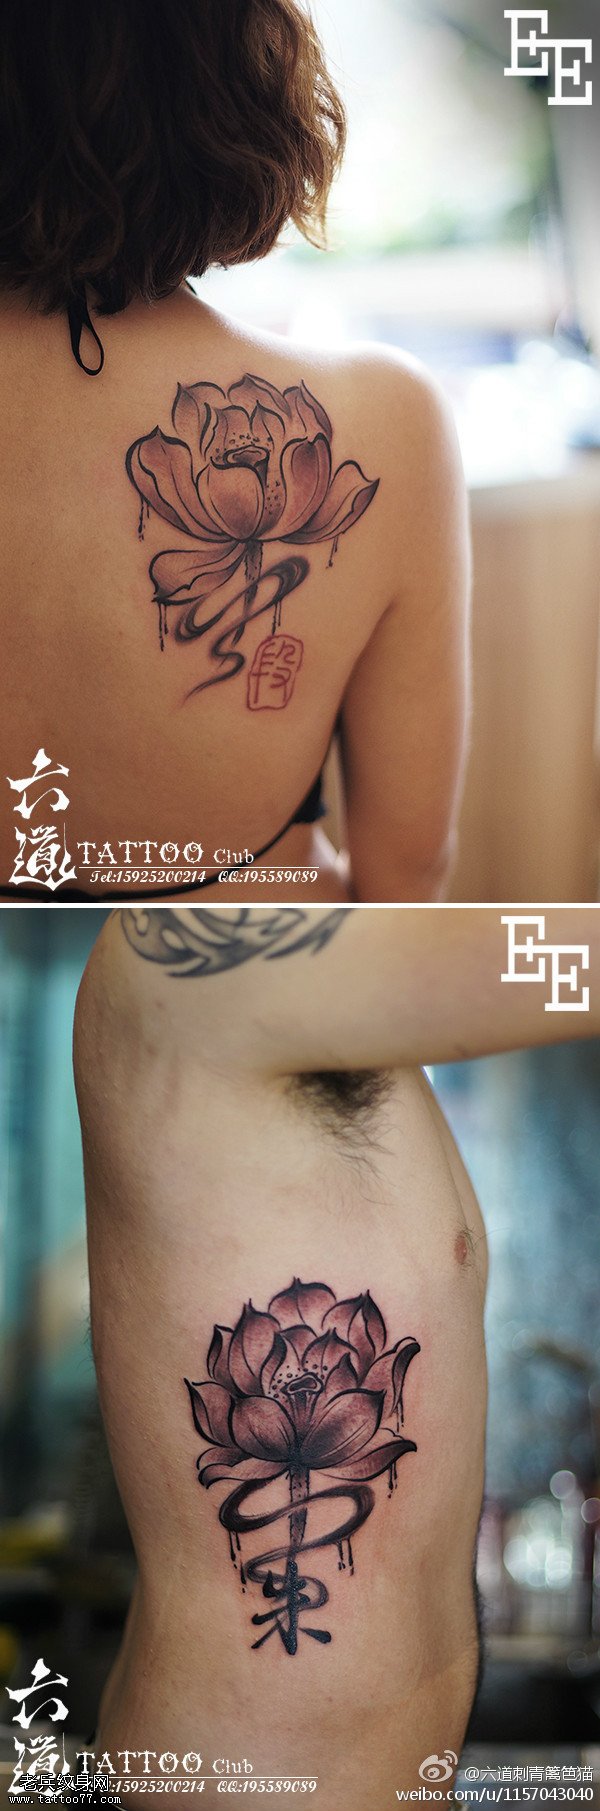 水墨重彩中国风荷花情侣纹身图案